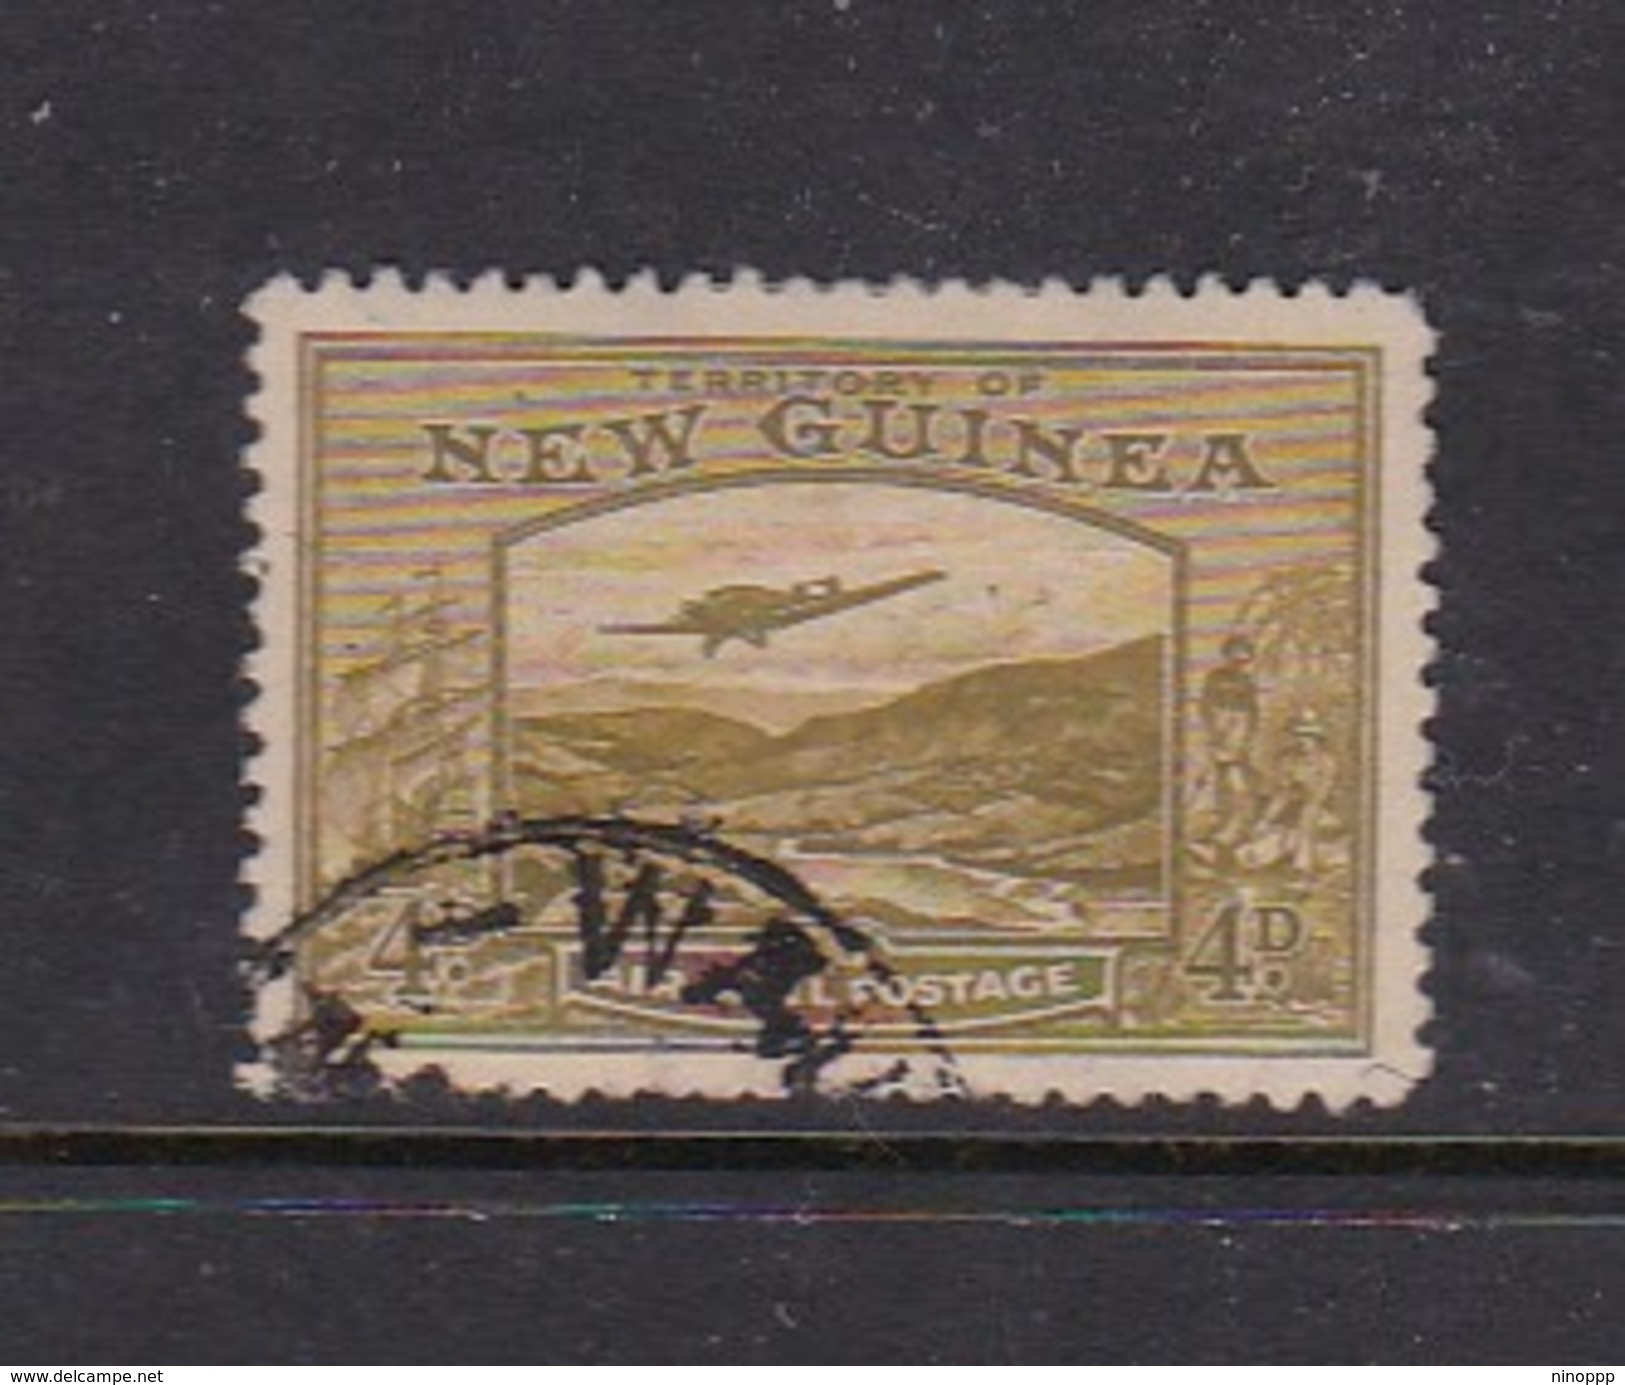 New Guinea SG 217 1939 Bulolo Goldfields Four Pennies Olive Used - Papua Nuova Guinea